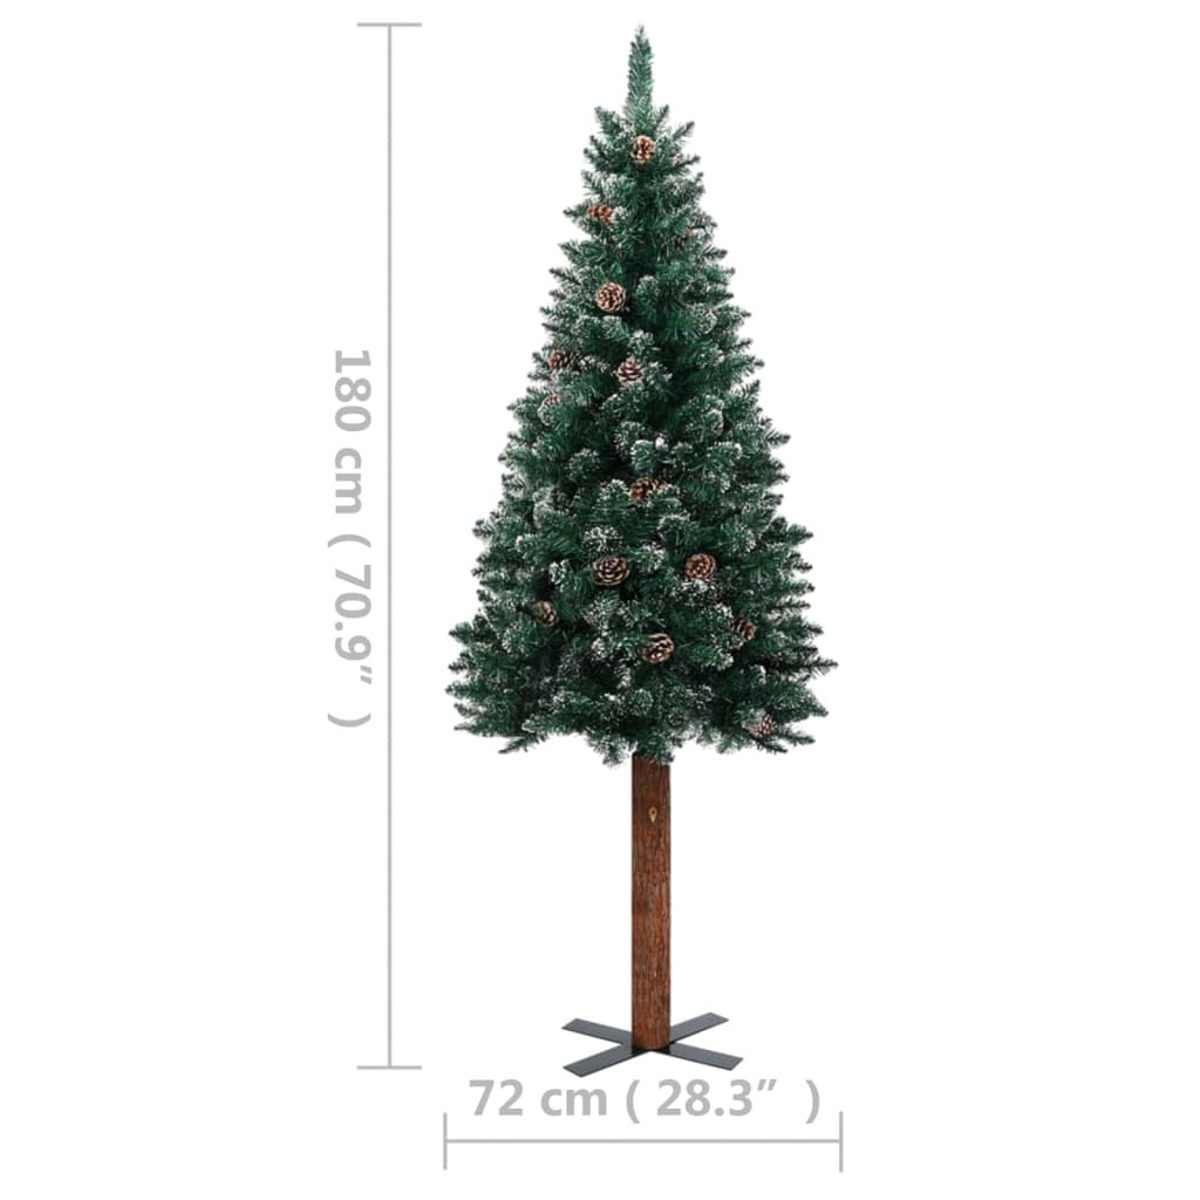 VIDAXL 3077763 Weihnachtsbaum